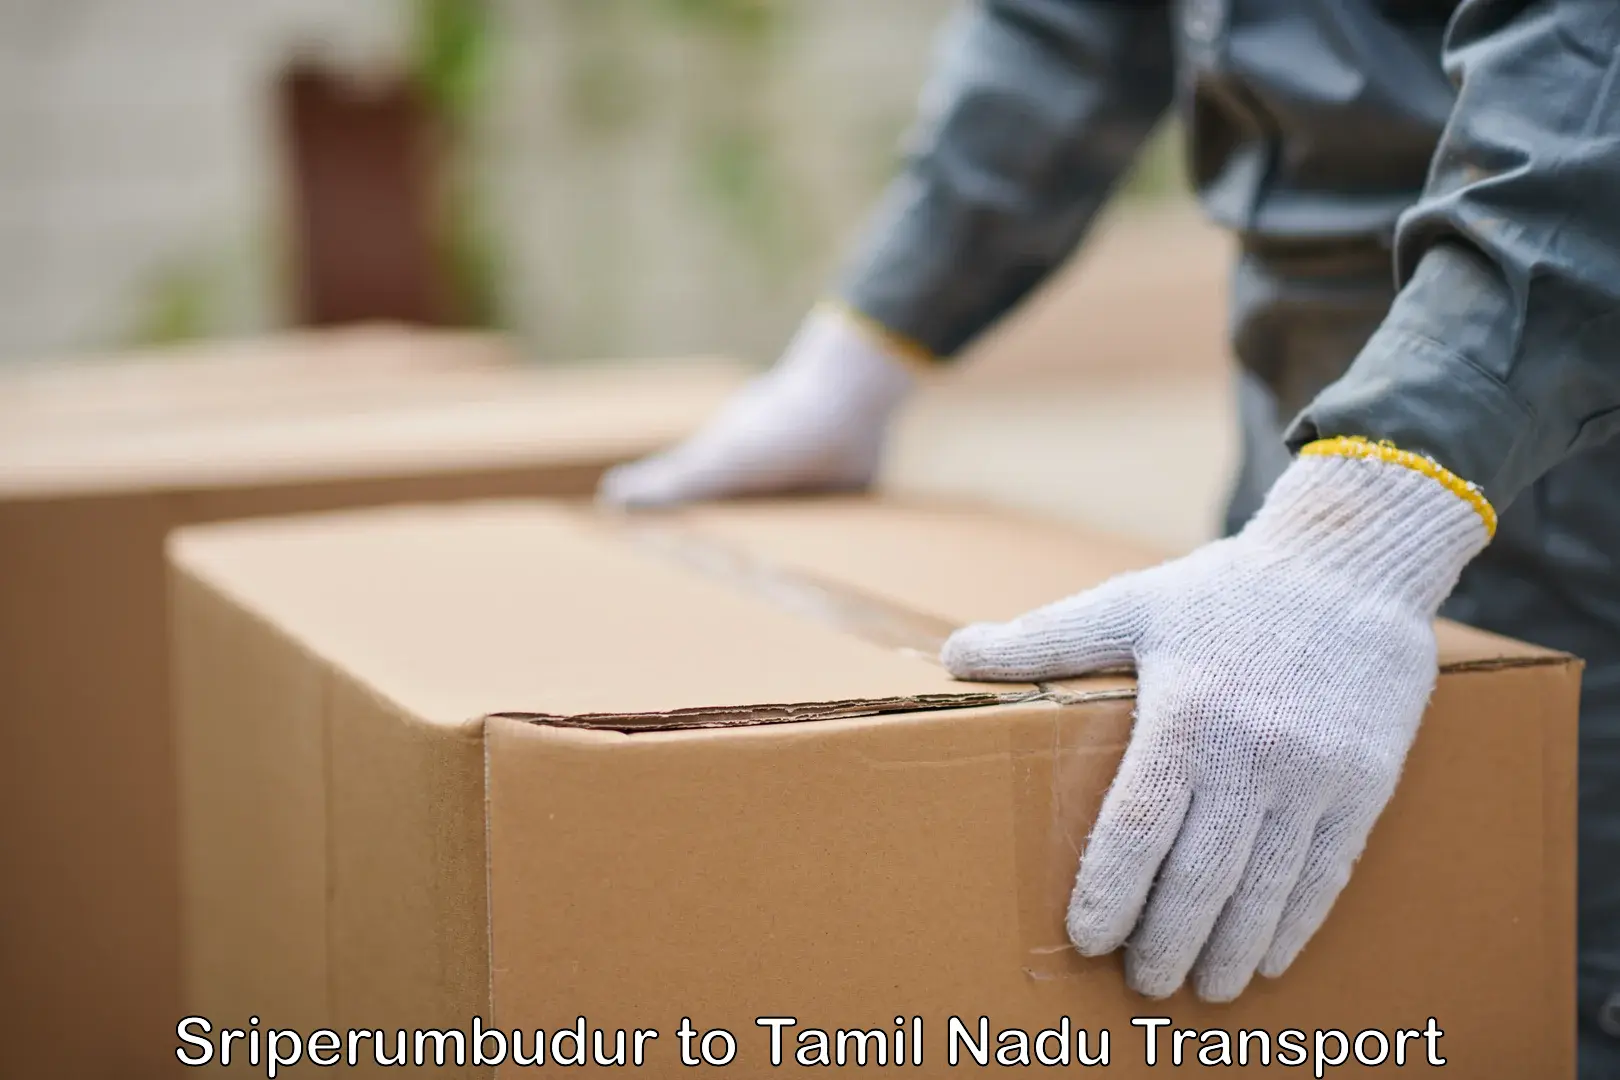 Furniture transport service Sriperumbudur to Tamil Nadu